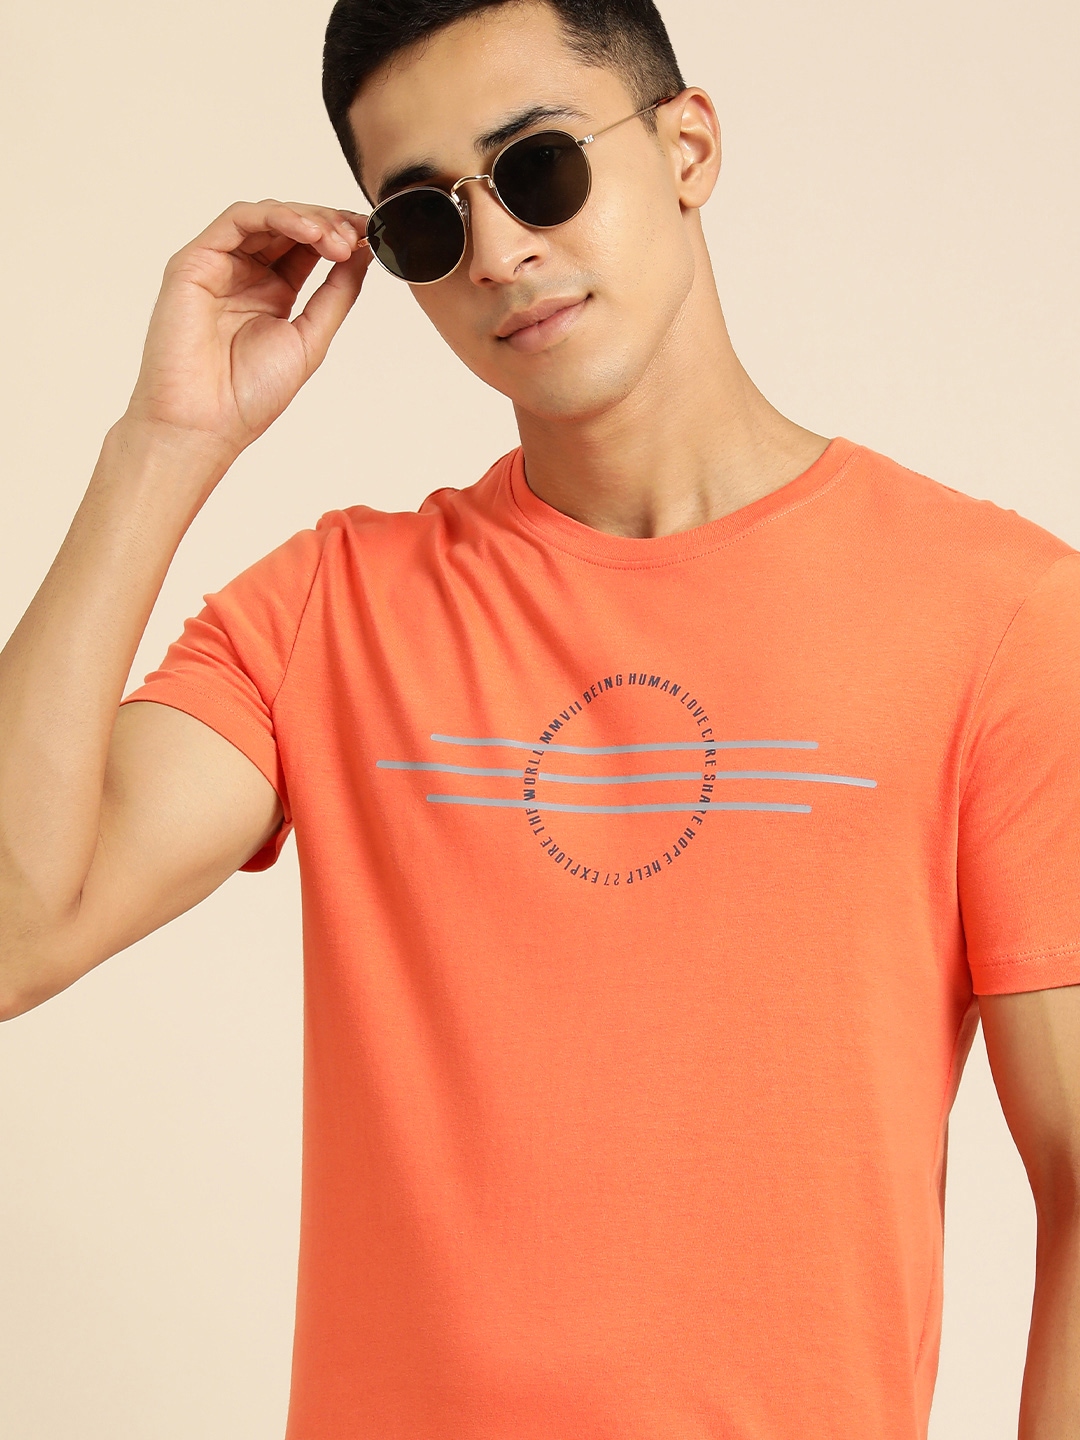 

Being Human Men Orange Typography Printed Pure Cotton T-shirt